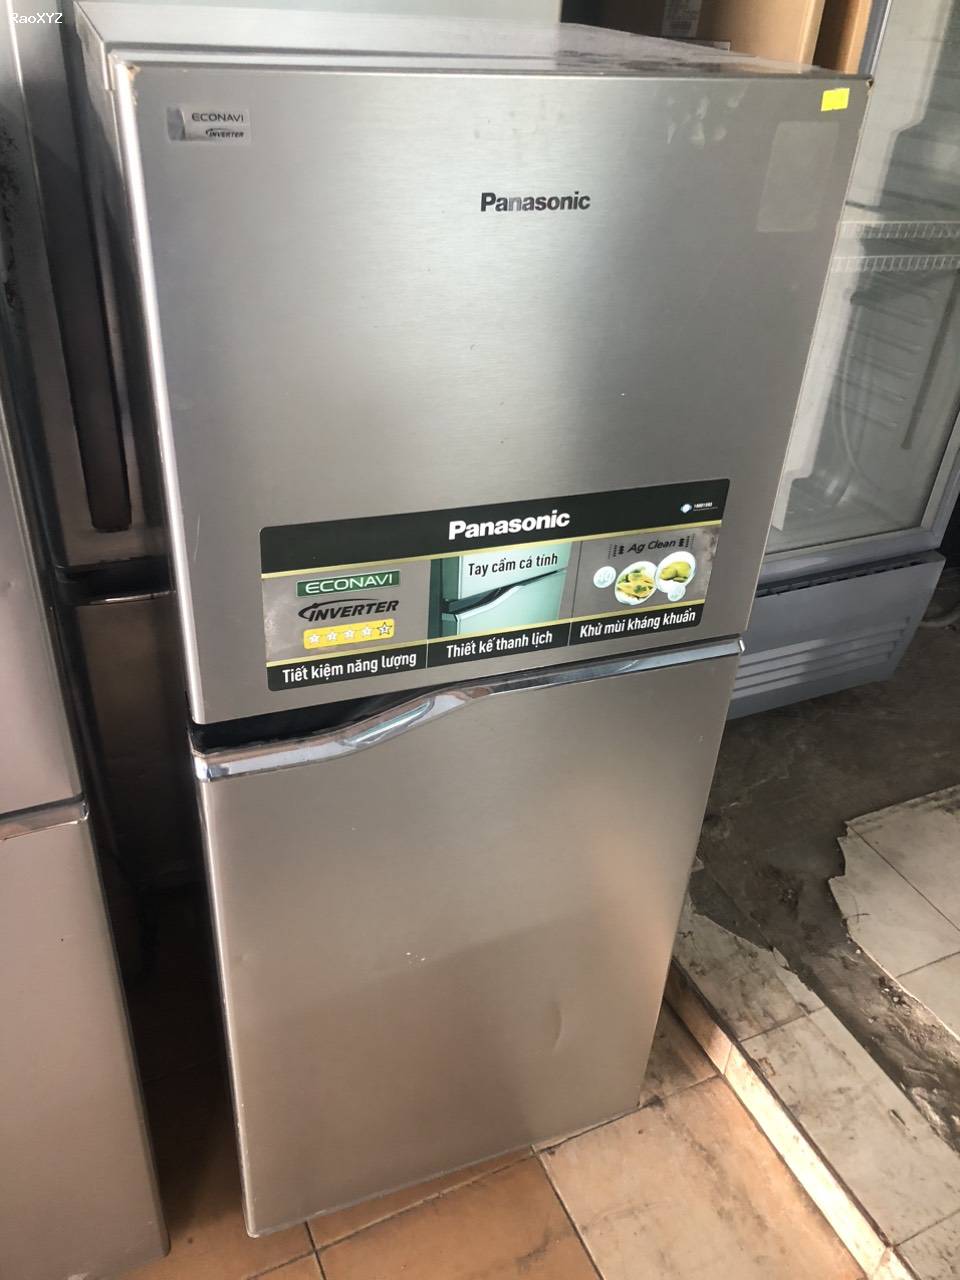 Tủ lạnh Panasonic 167lit tiết kiệm điện